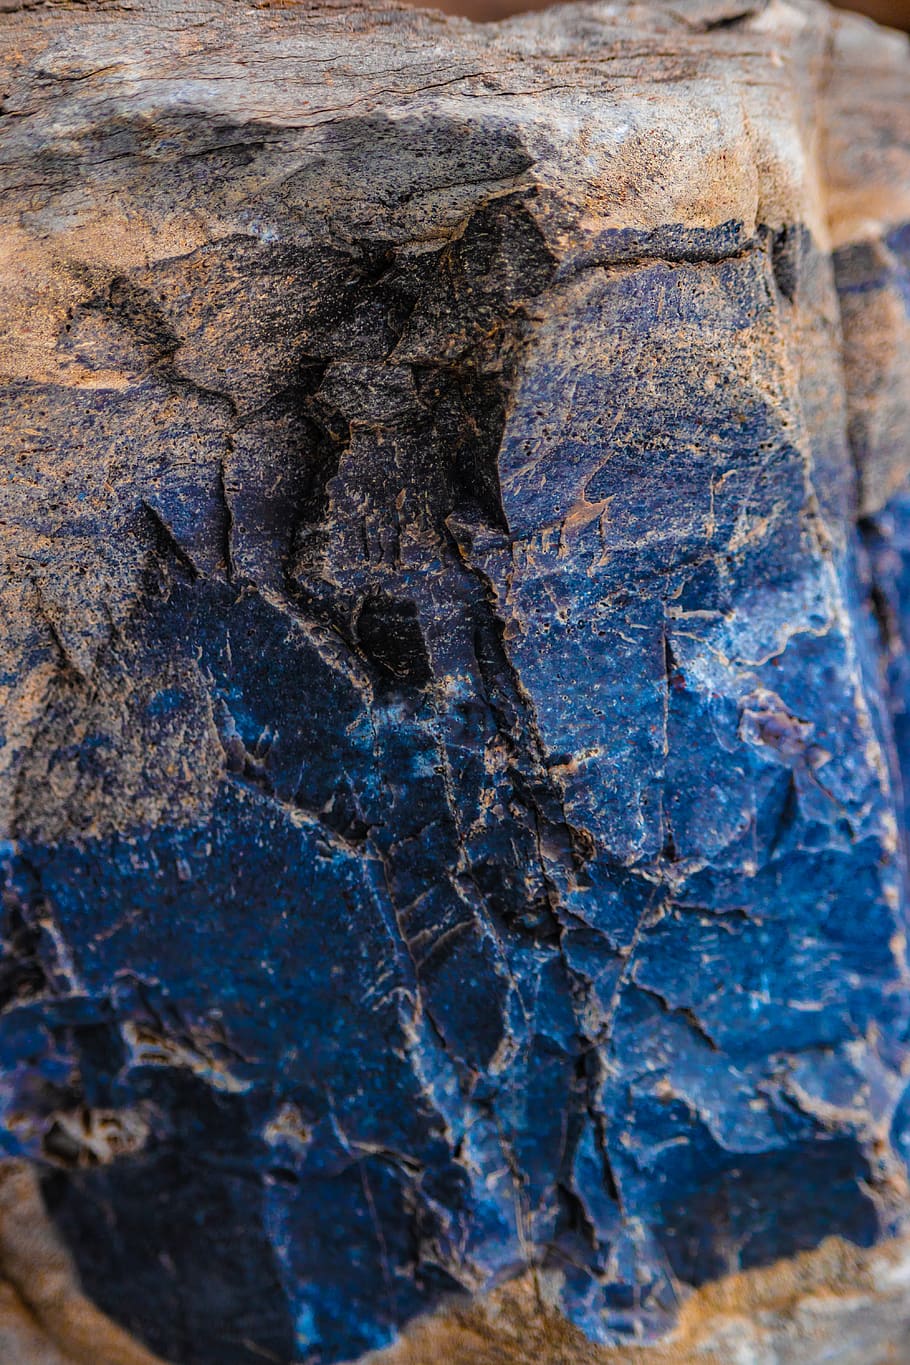 rochas, granito, azul, calcário, pedras, textura, mármore, sólido, difícil, close-up